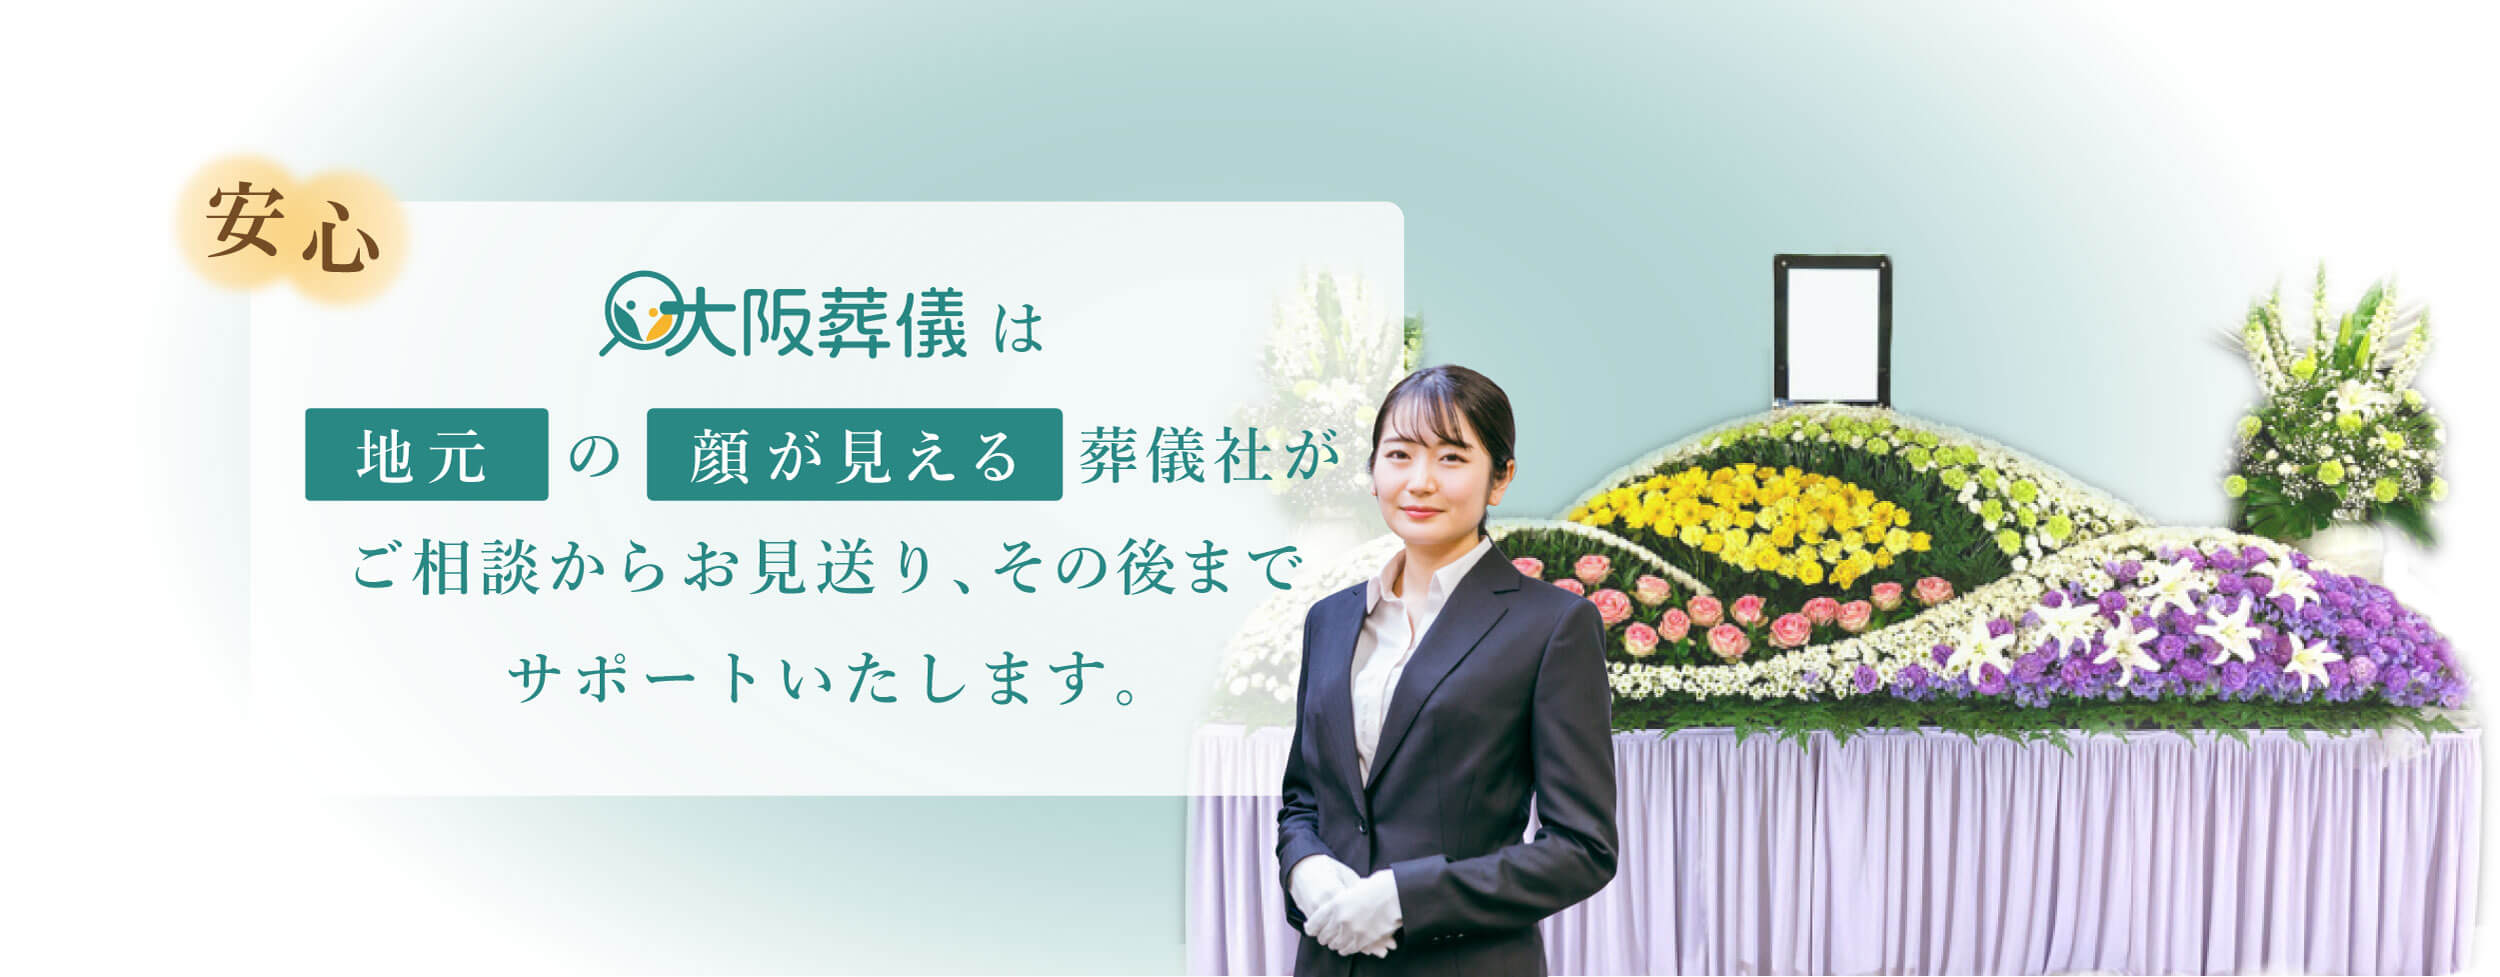 大阪葬儀は地元の顔が見える葬儀社がご相談からお見送り、その後までサポートいたします。